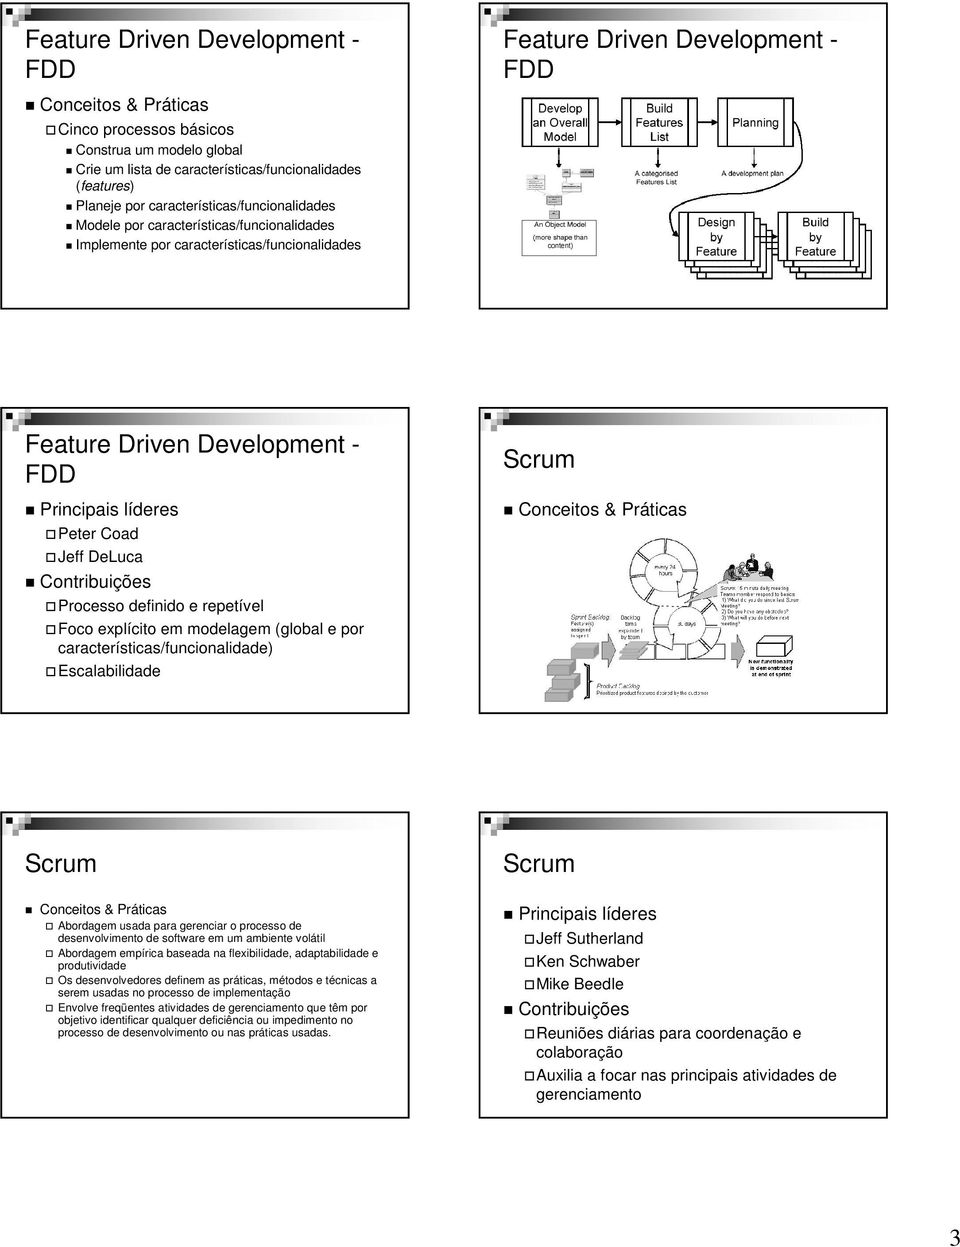 repetível Foco explícito em modelagem (global e por características/funcionalidade) Escalabilidade Abordagem usada para gerenciar o processo de desenvolvimento de software em um ambiente volátil